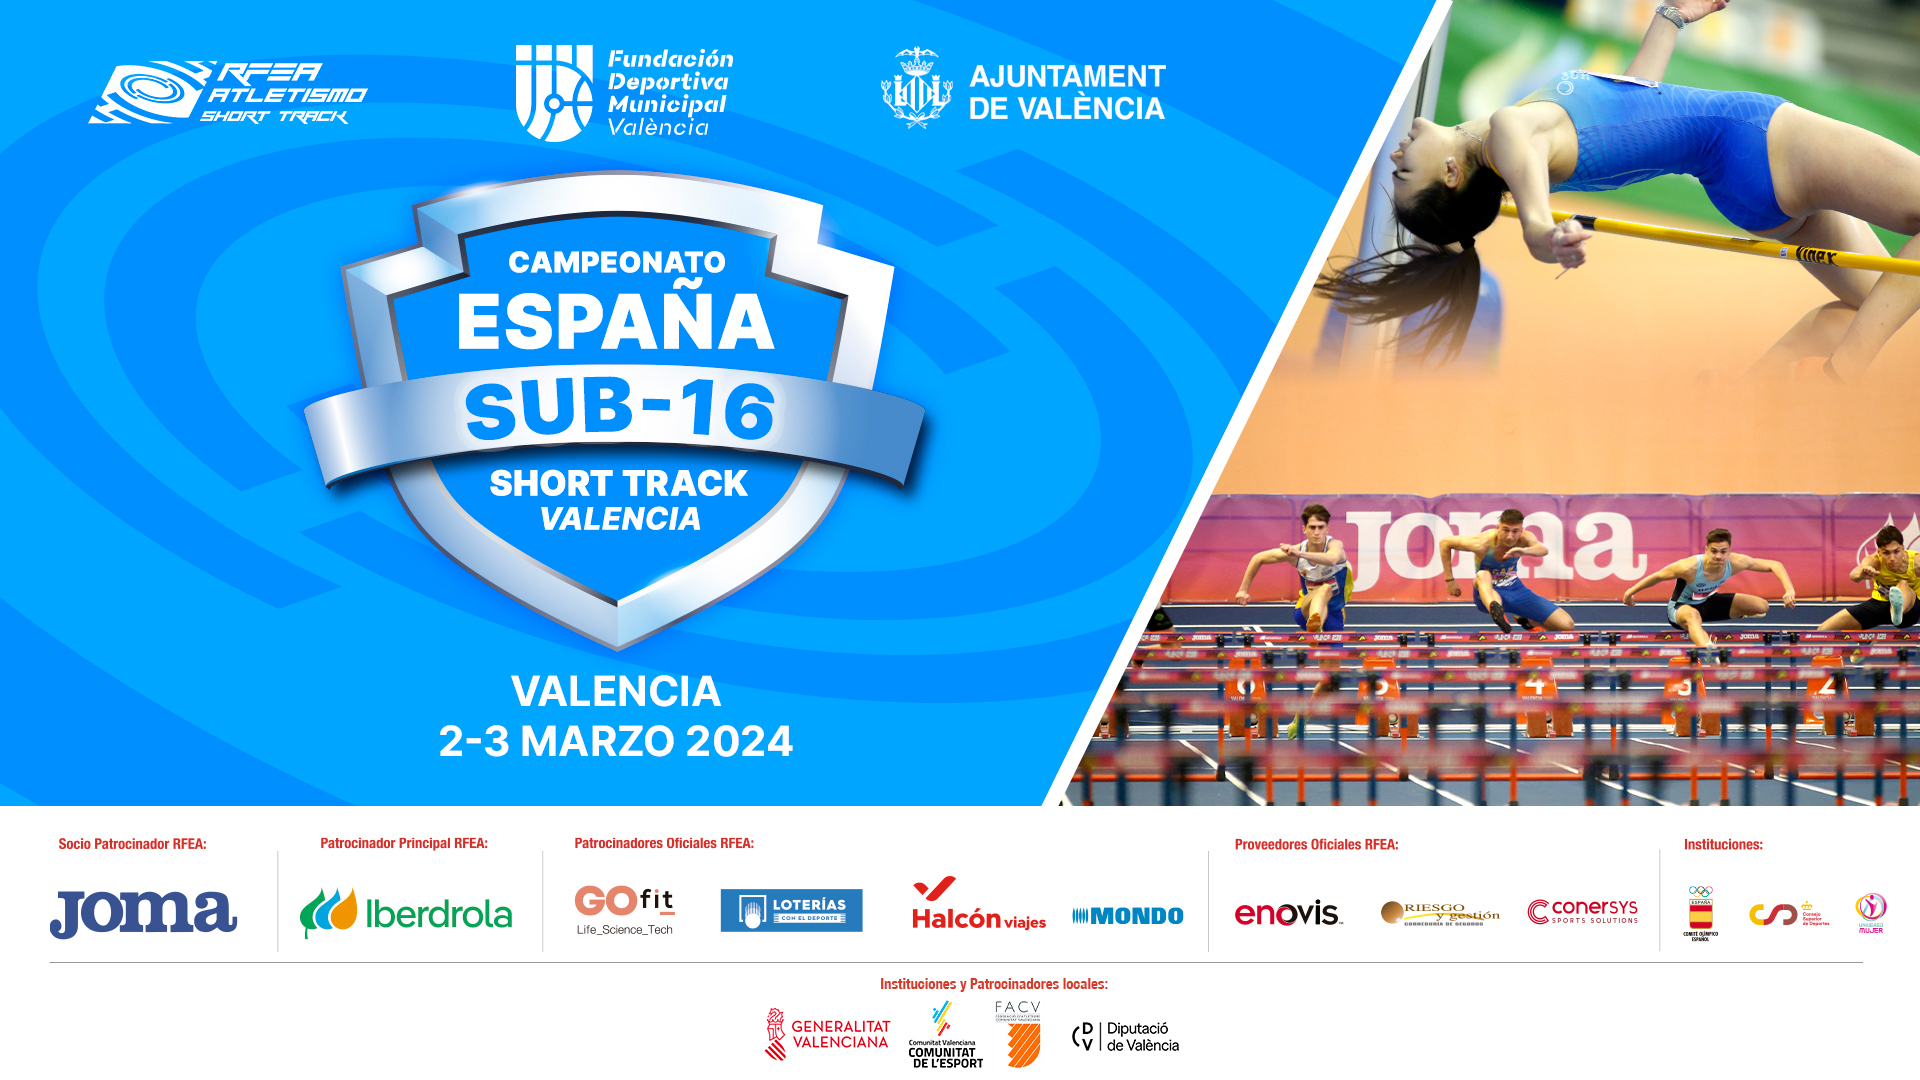 Campeonato de España Sub-16 Short Track